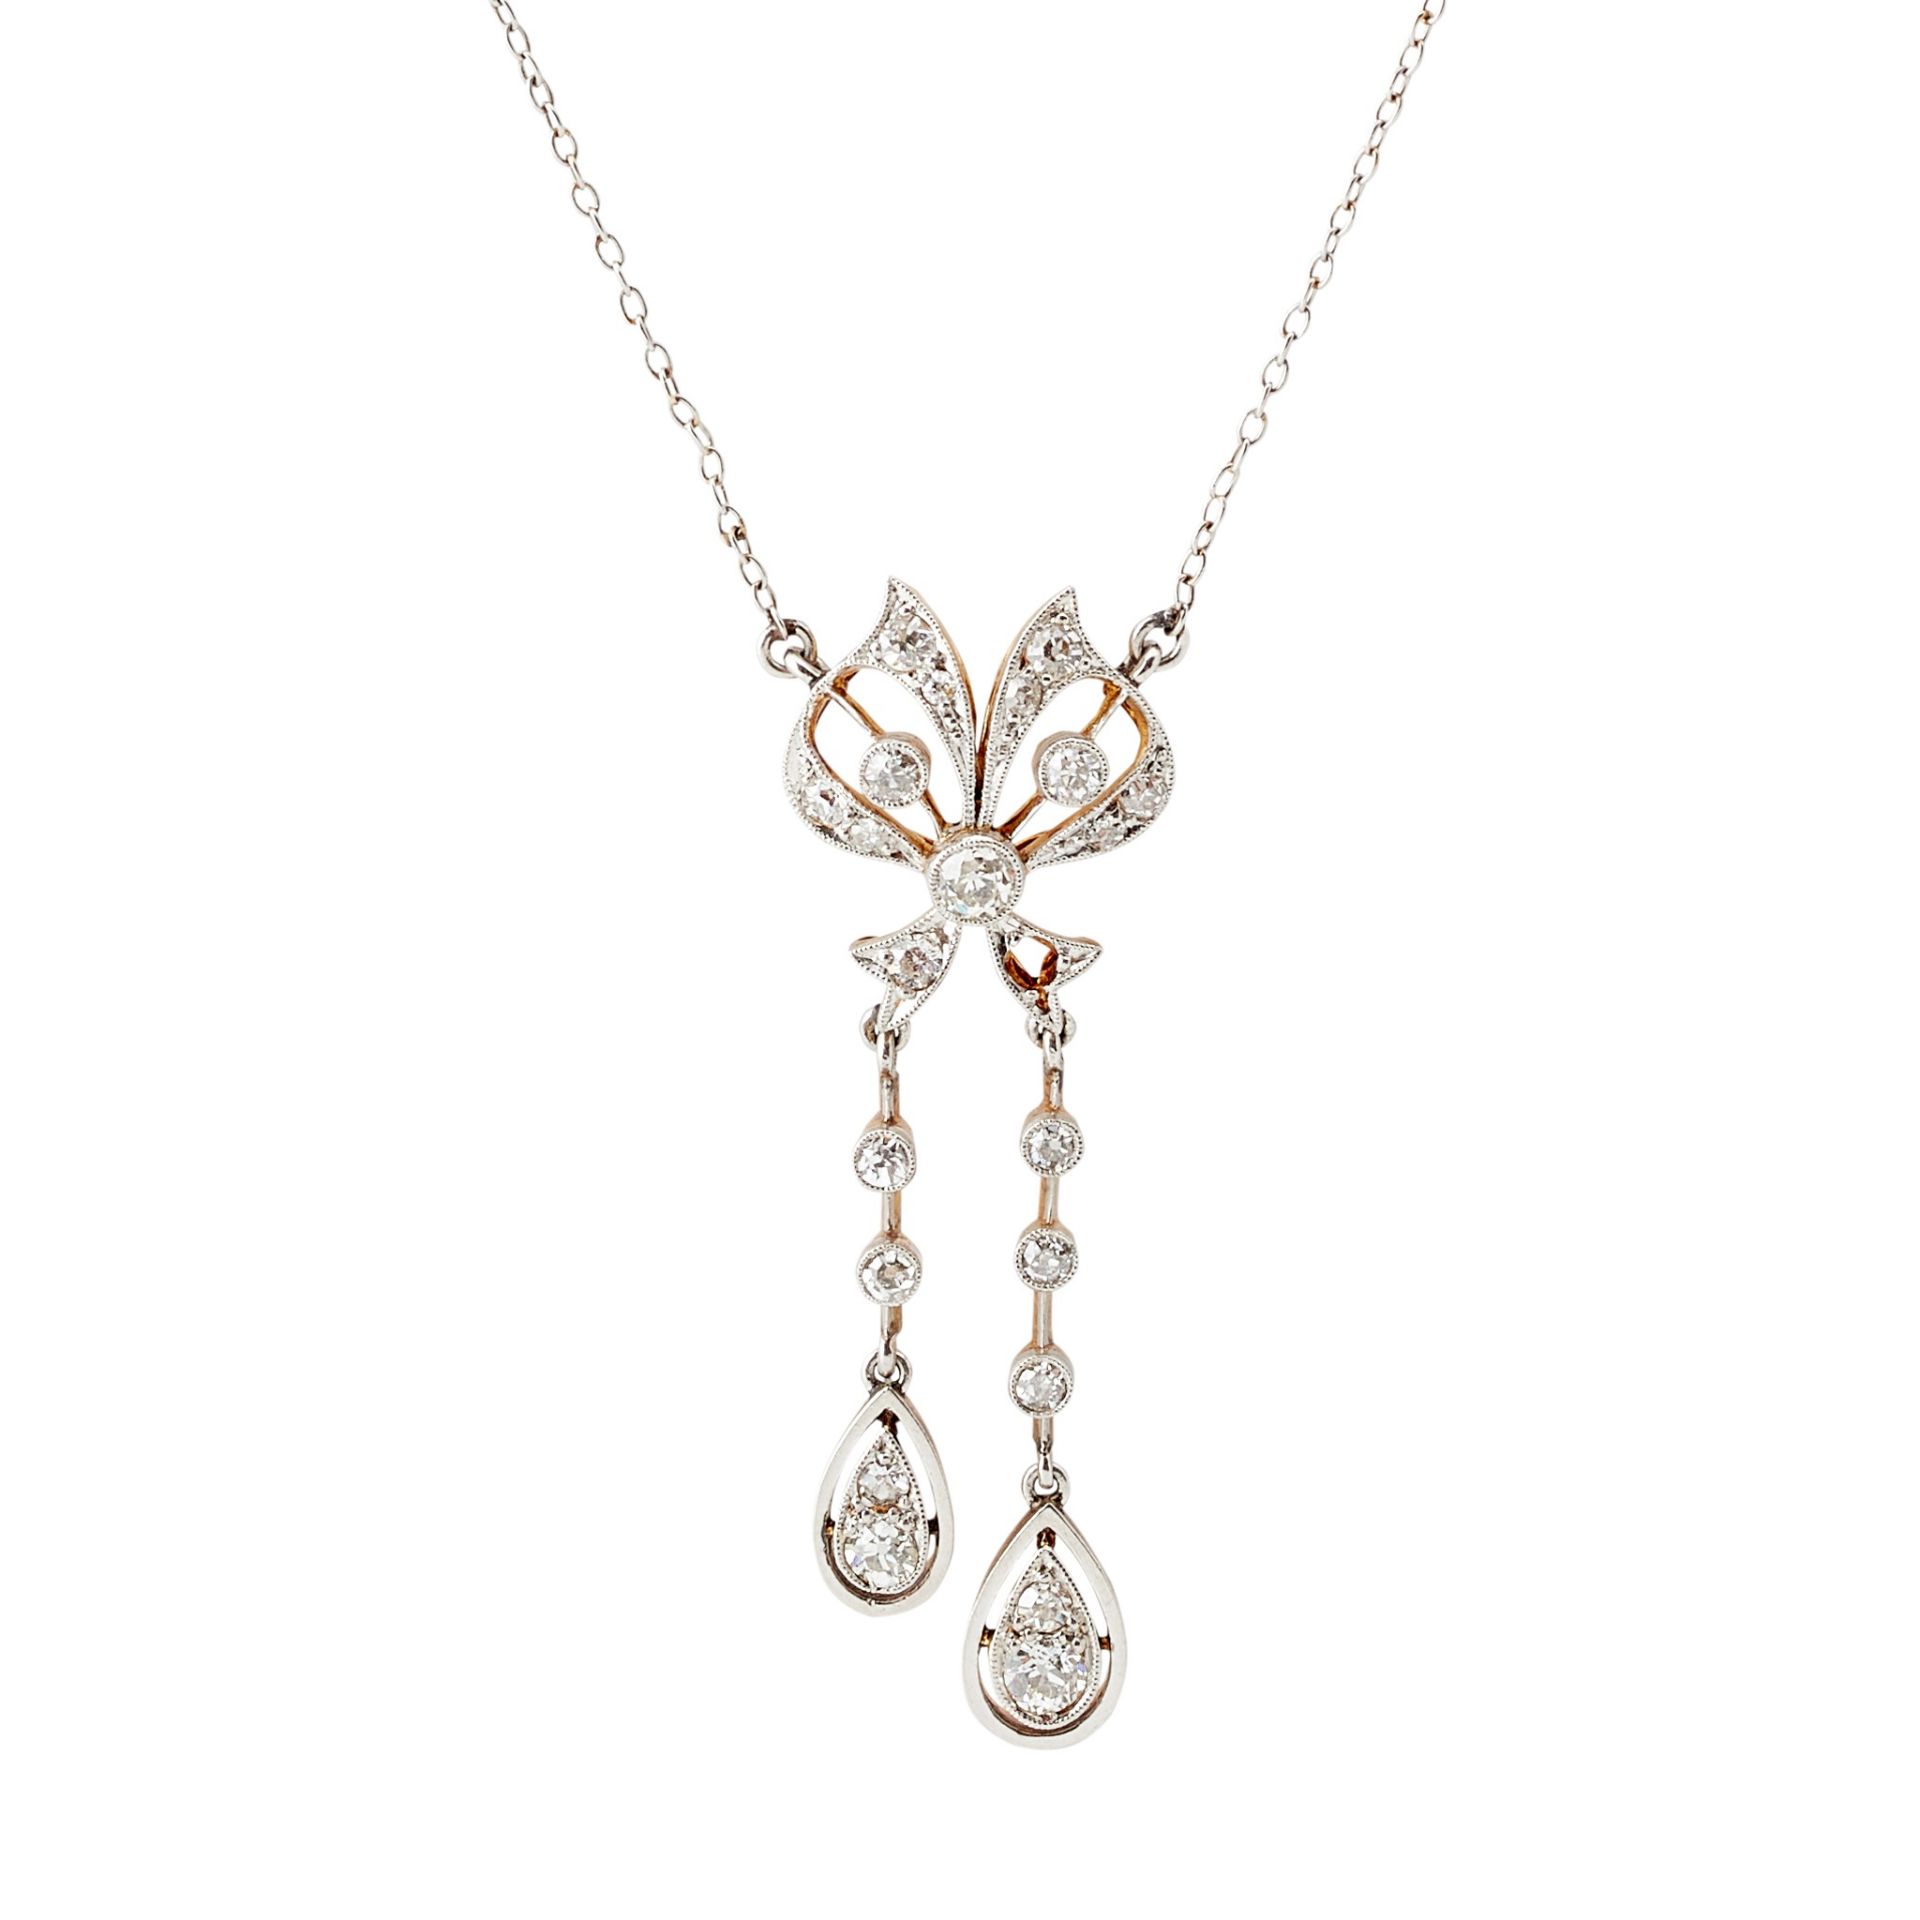 A Belle Epoque diamond set pendant necklace